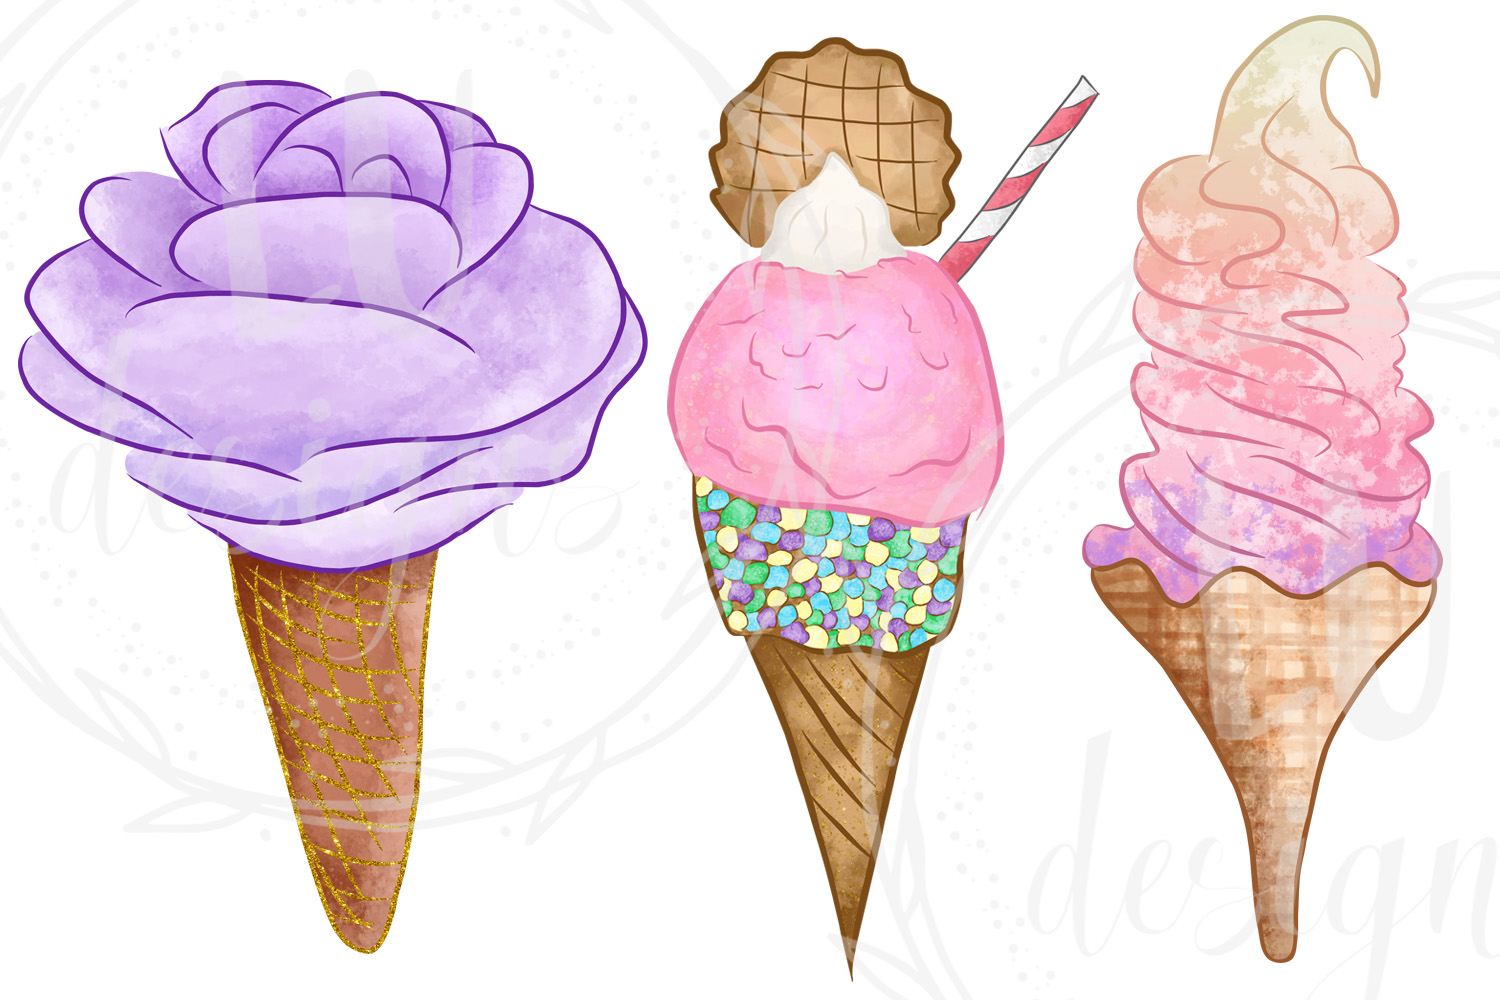 icecream clipart watercolor